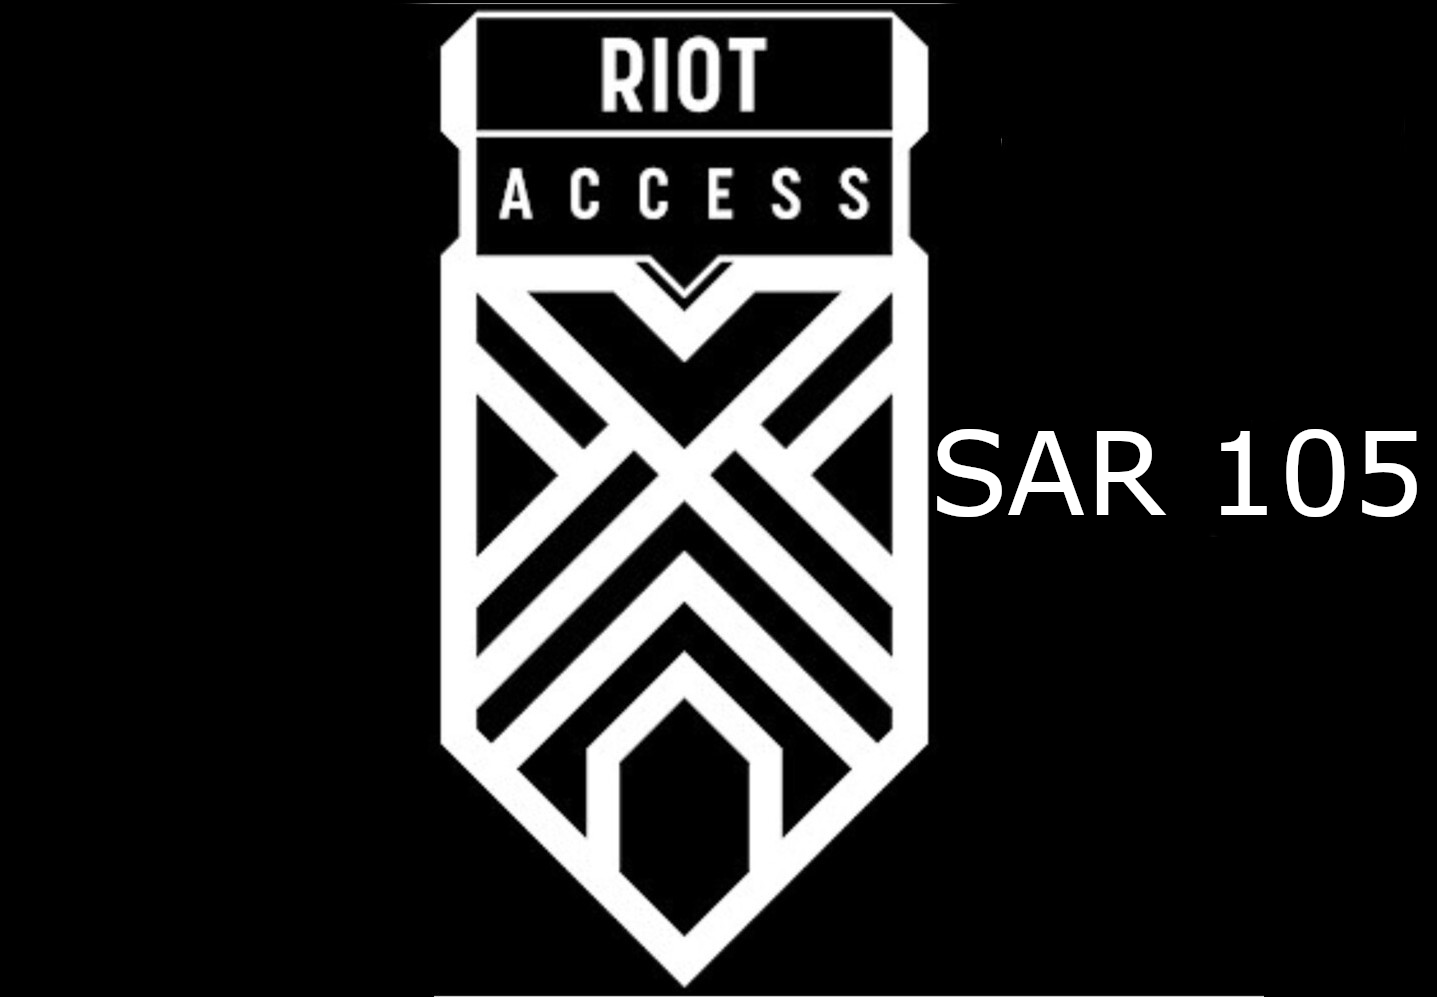 Riot Access 105 SAR Code SA